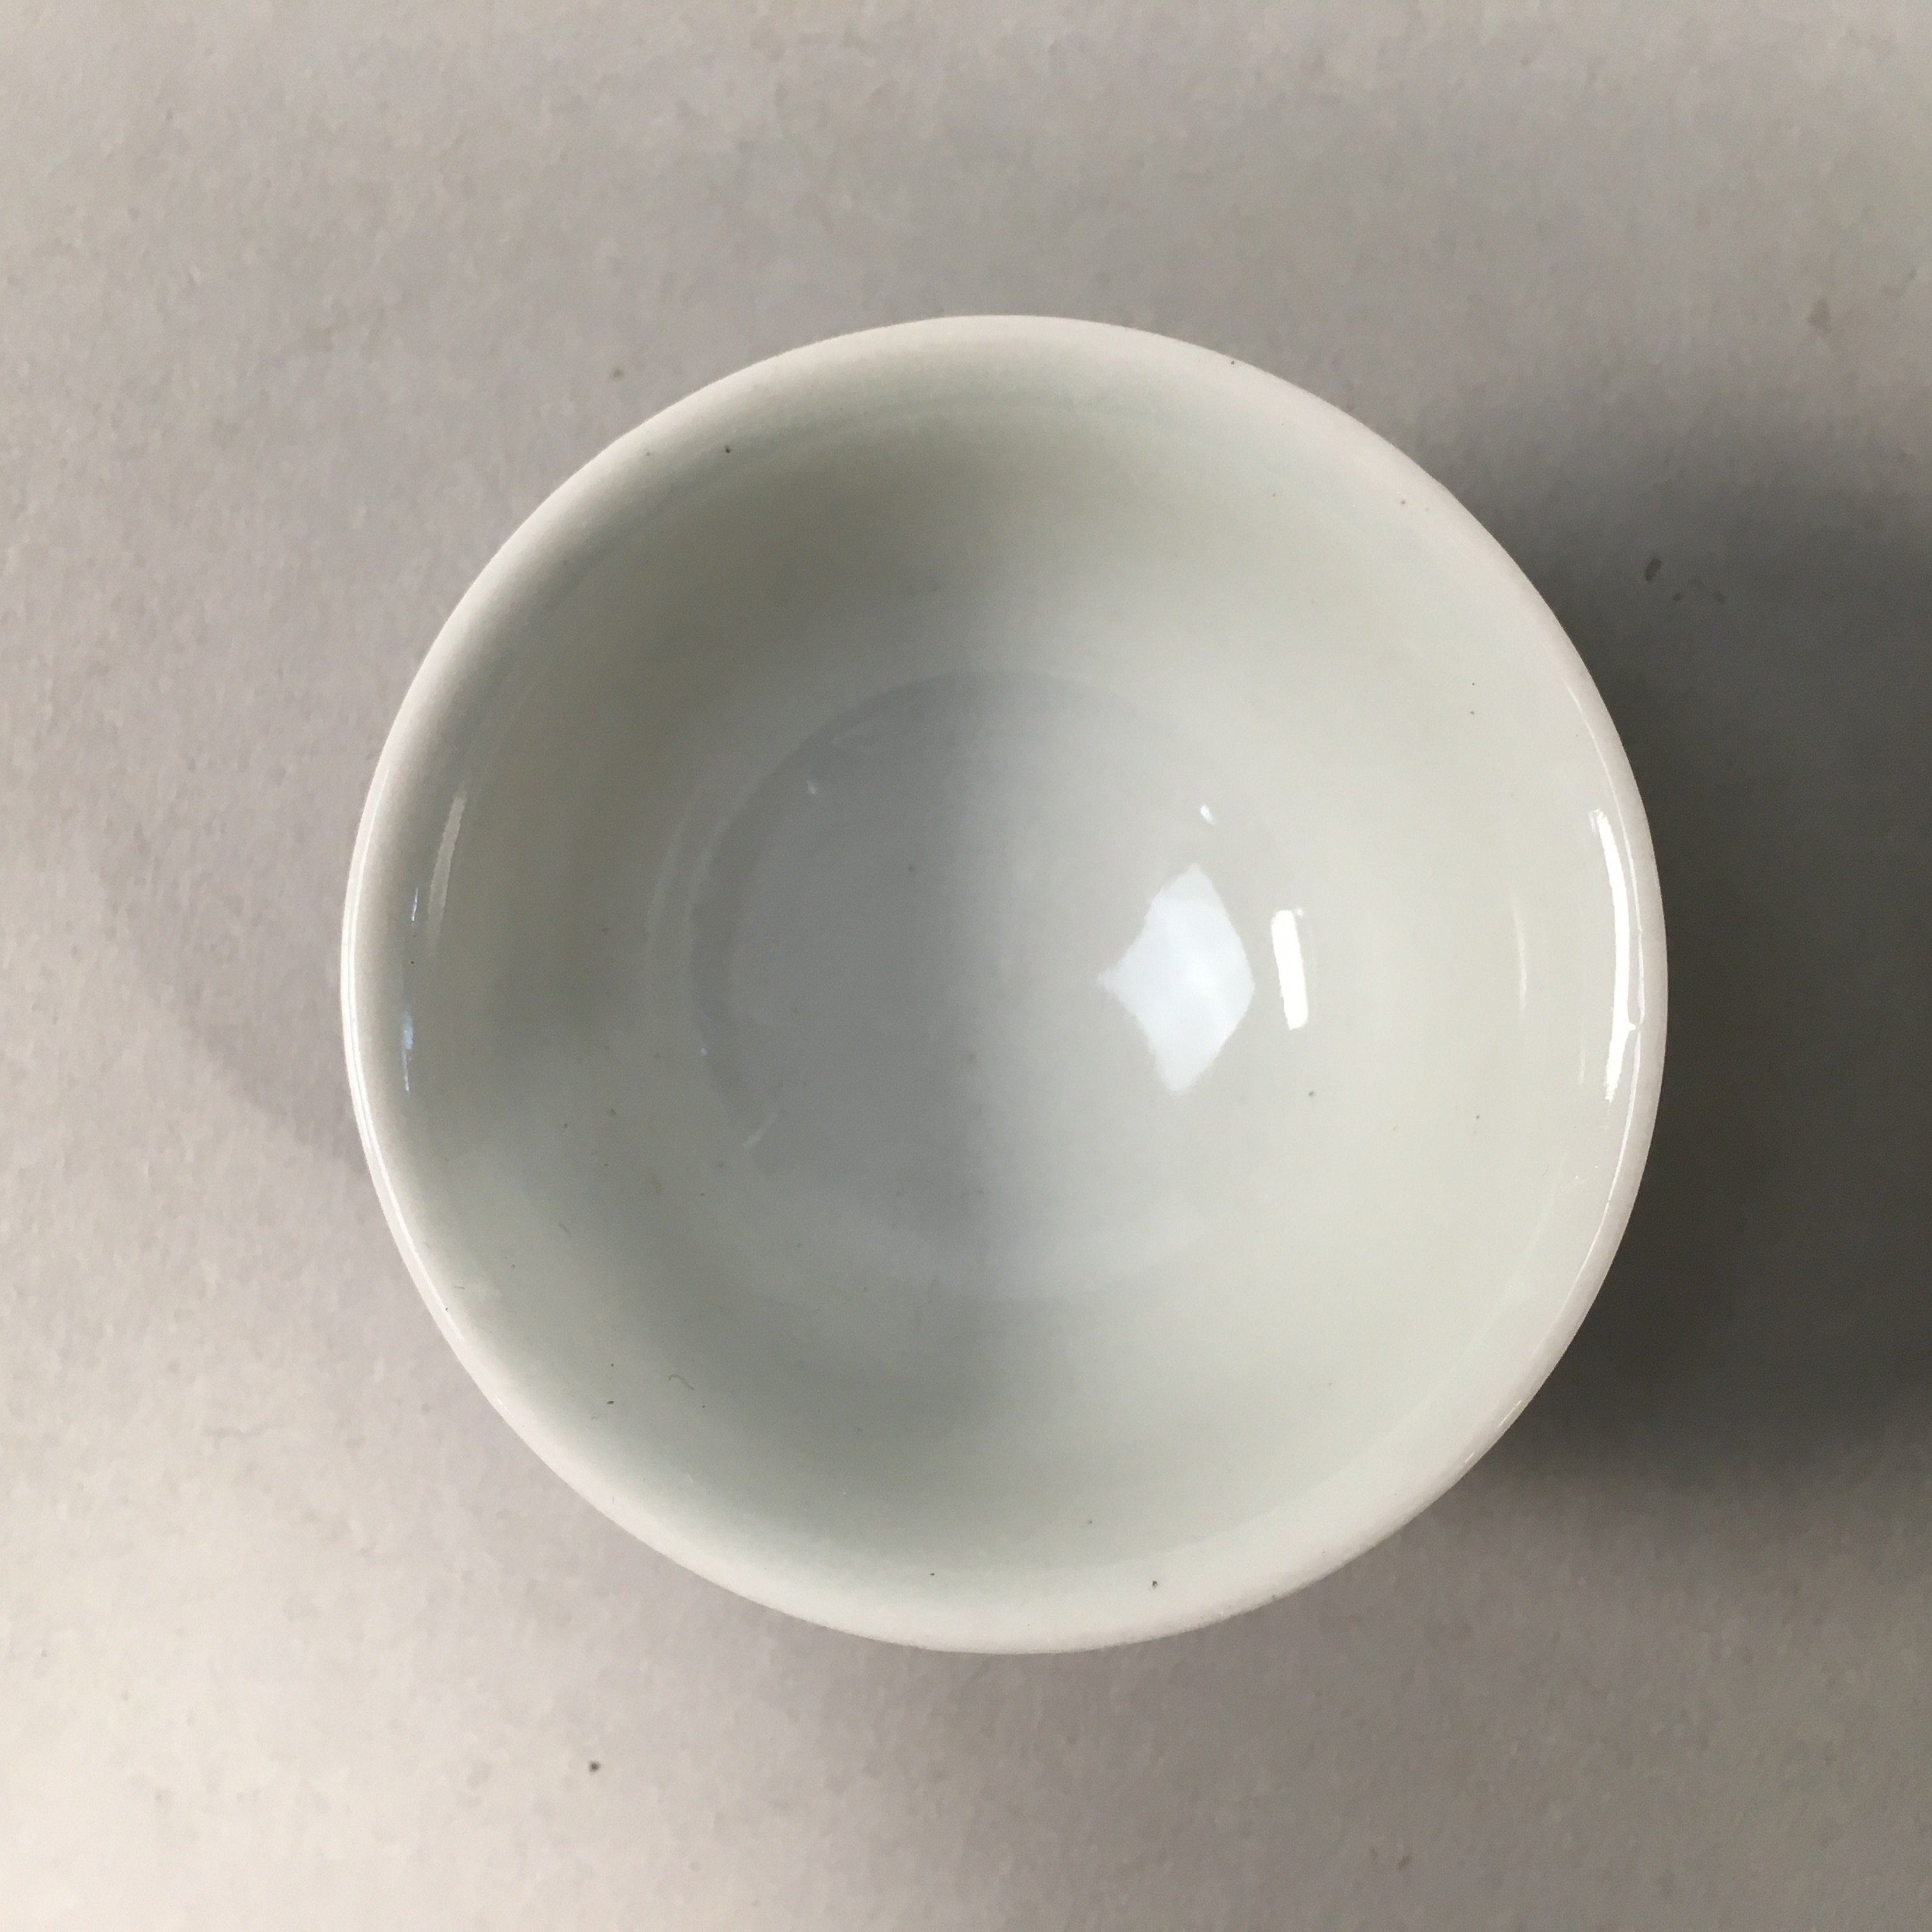 Japanese Porcelain Sake Cup Guinomi Sakazuki Vtg Blue White Mountain GU874